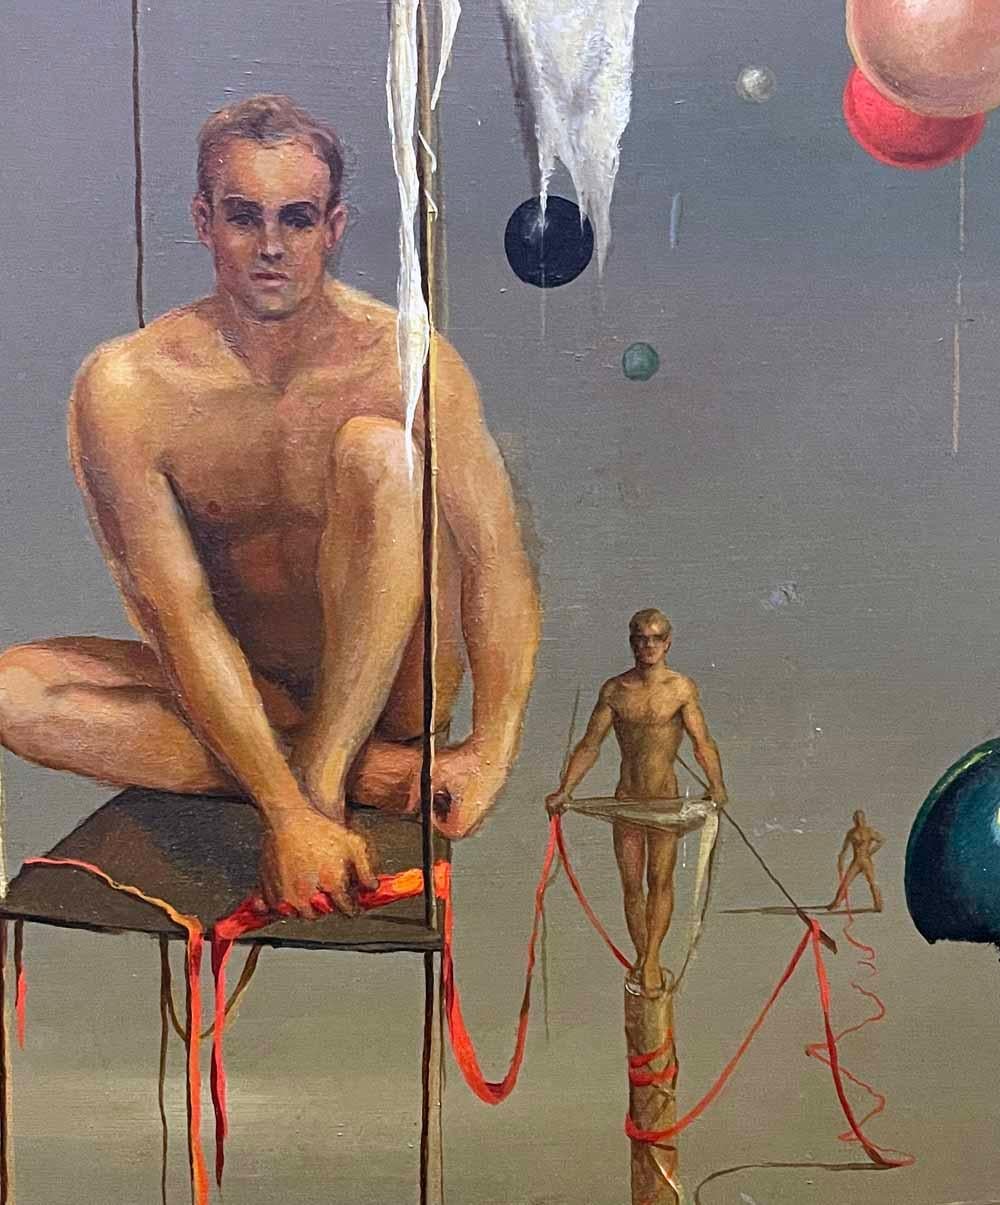 Esta imagen, una de las mejores y sin duda la primera pintura de John Lear que hemos visto u ofrecido, representa a tres figuras masculinas desnudas unidas por una línea de cinta roja y enmarcadas por una serie de orbes que flotan en el aire.  Como